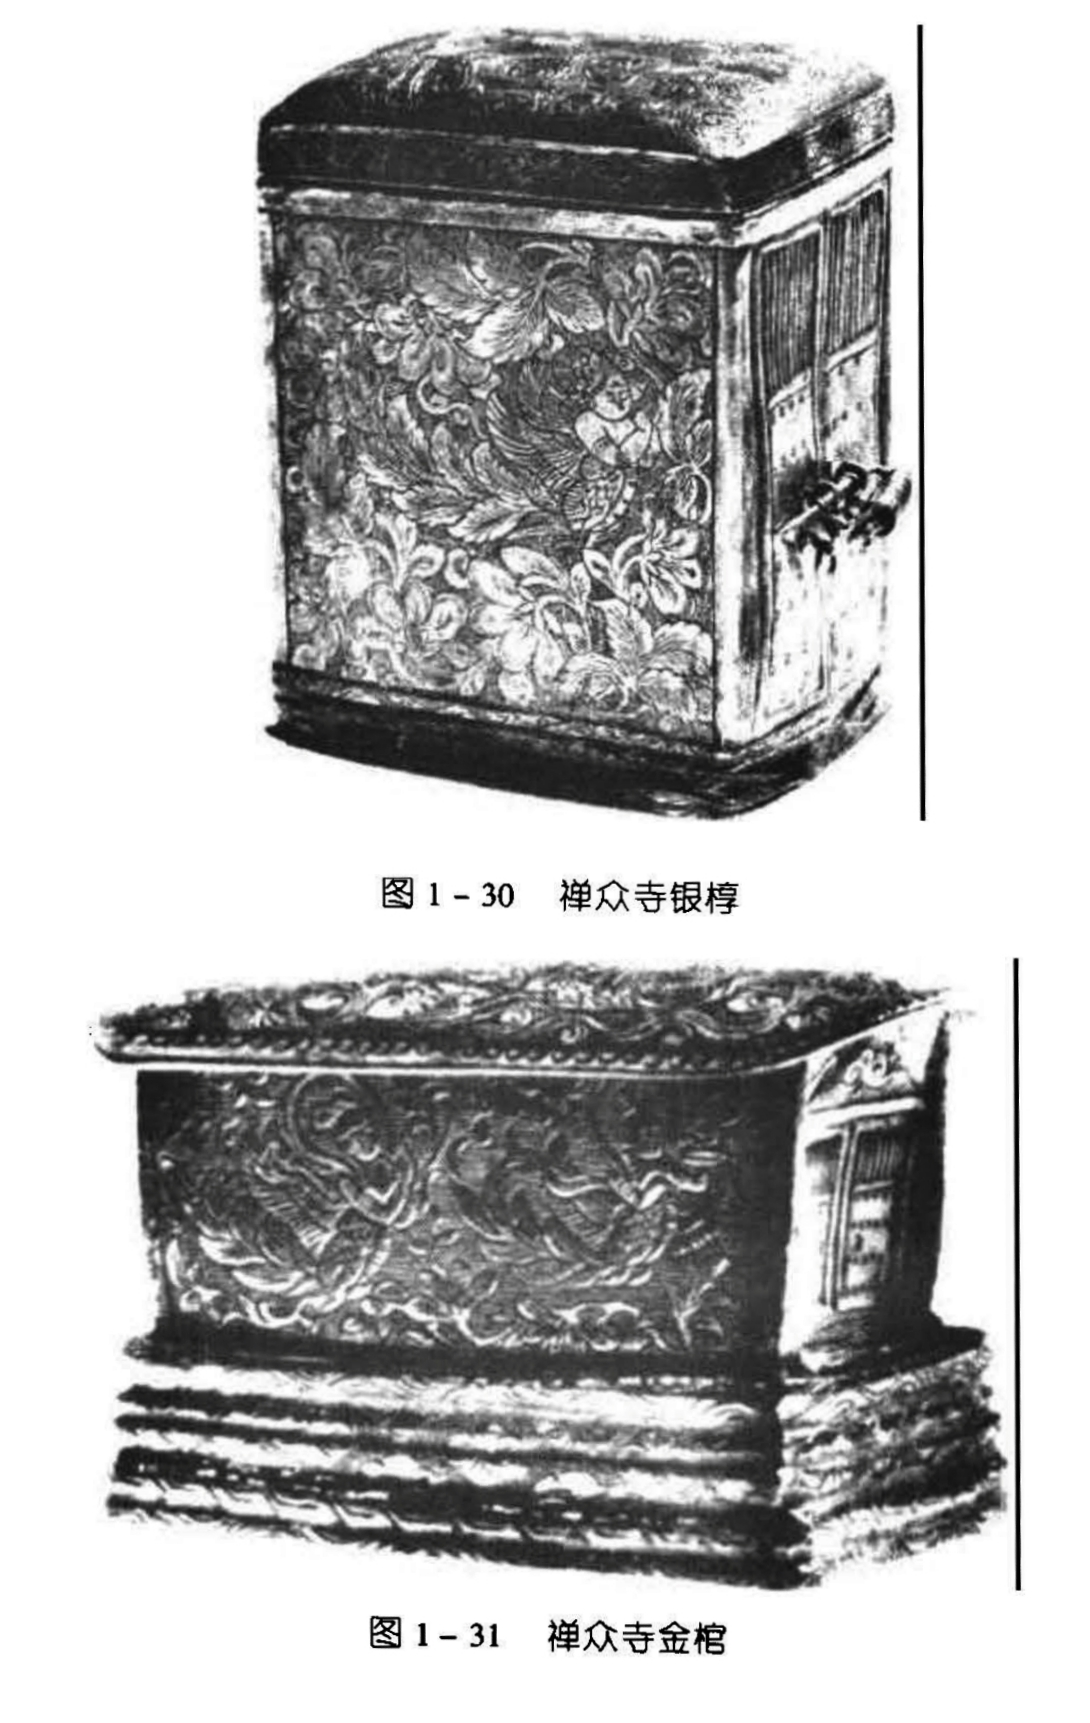 图1-30禅众寺银椁 图1-31 禅众寺金棺